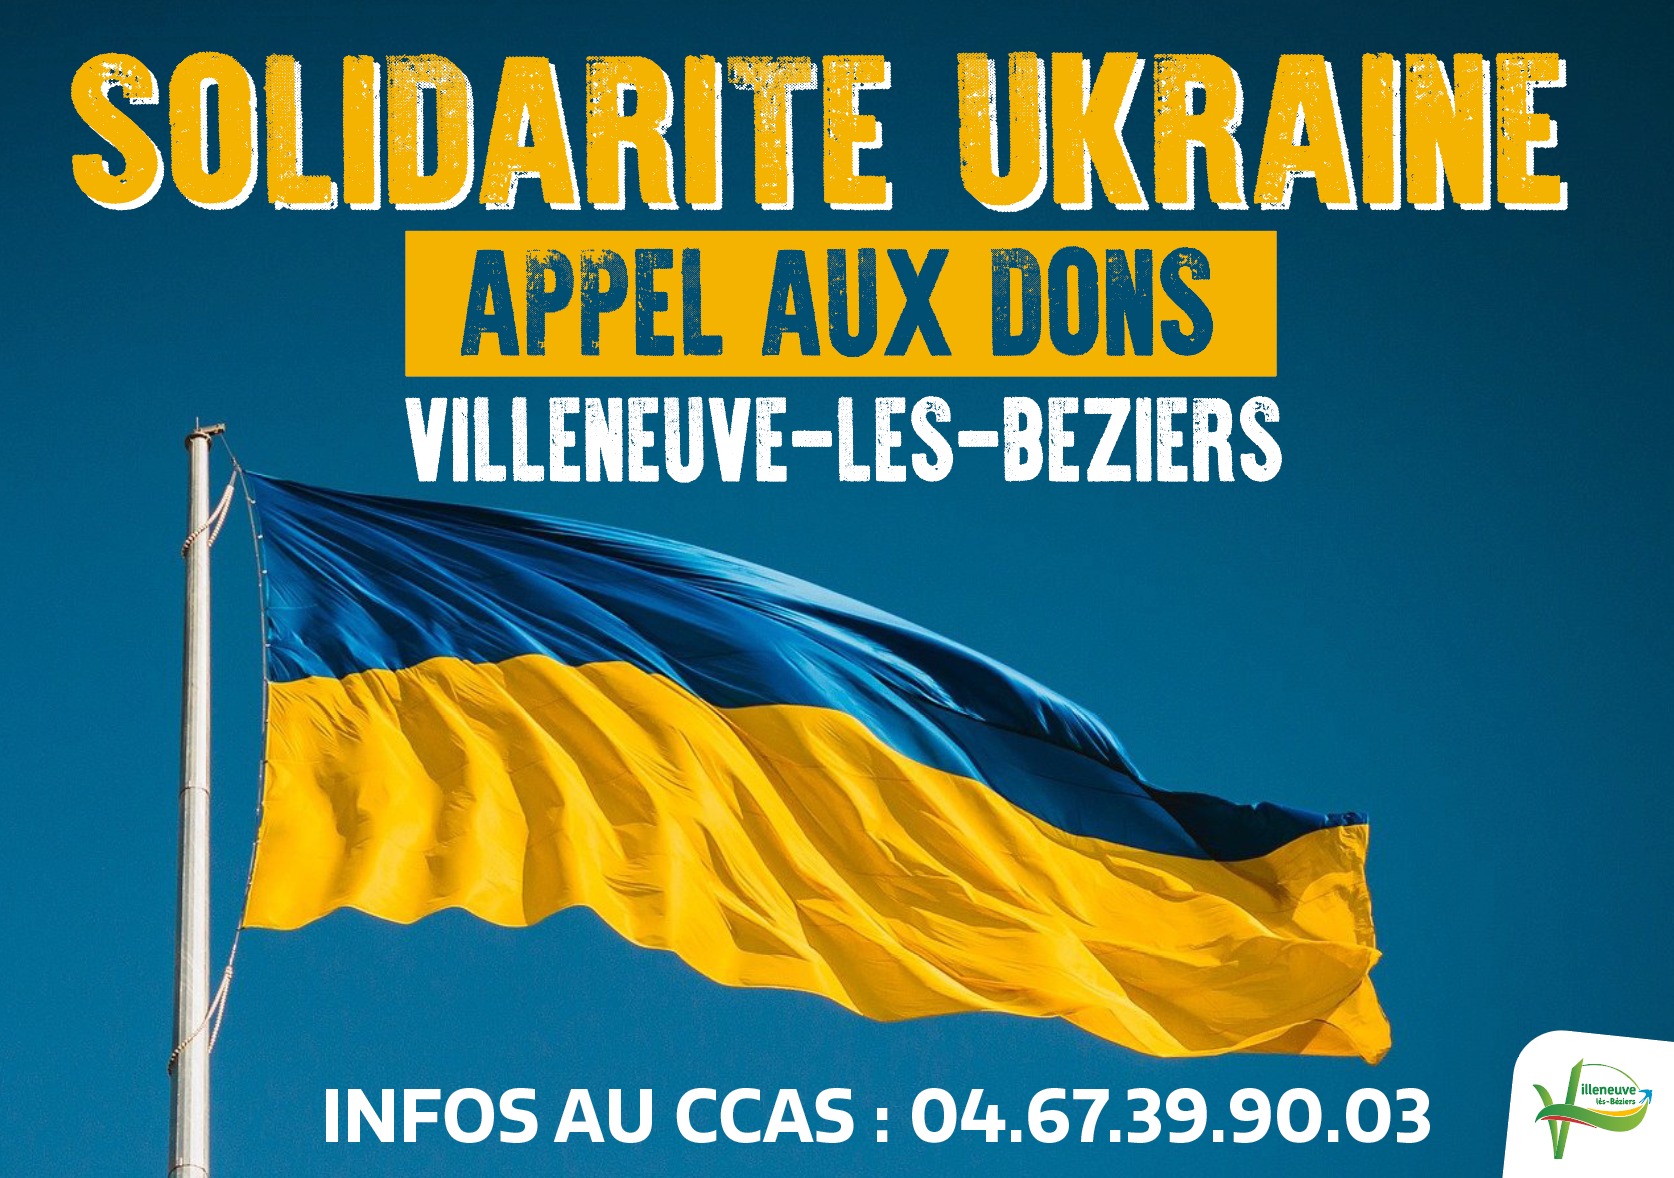 Lire la suite à propos de l’article SOLIDARITÉ UKRAINE – APPEL AUX DONS